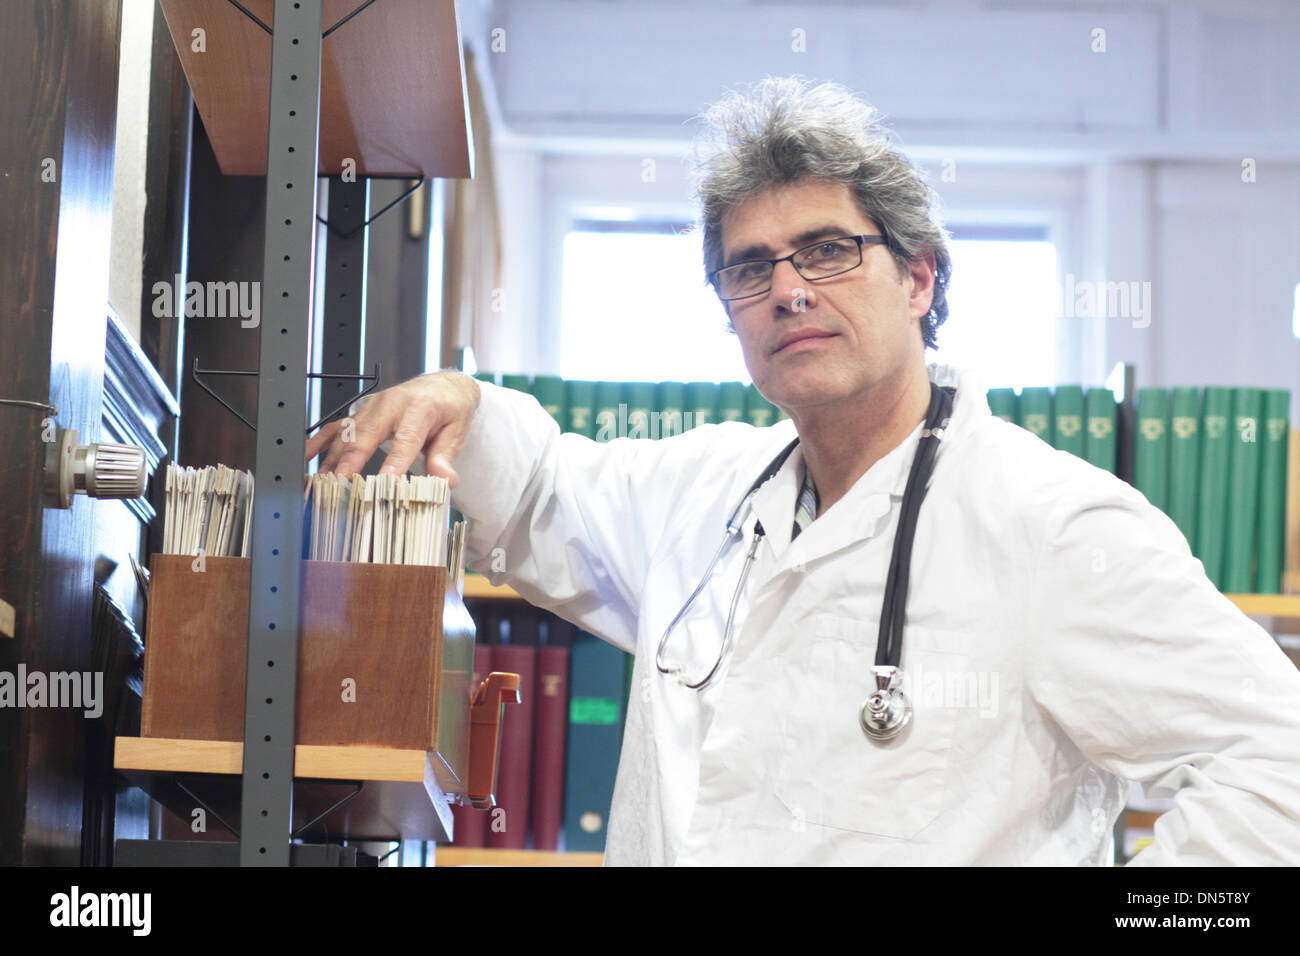 Un médecin homme moyen caucasian personne est debout dans une bibliothèque Banque D'Images